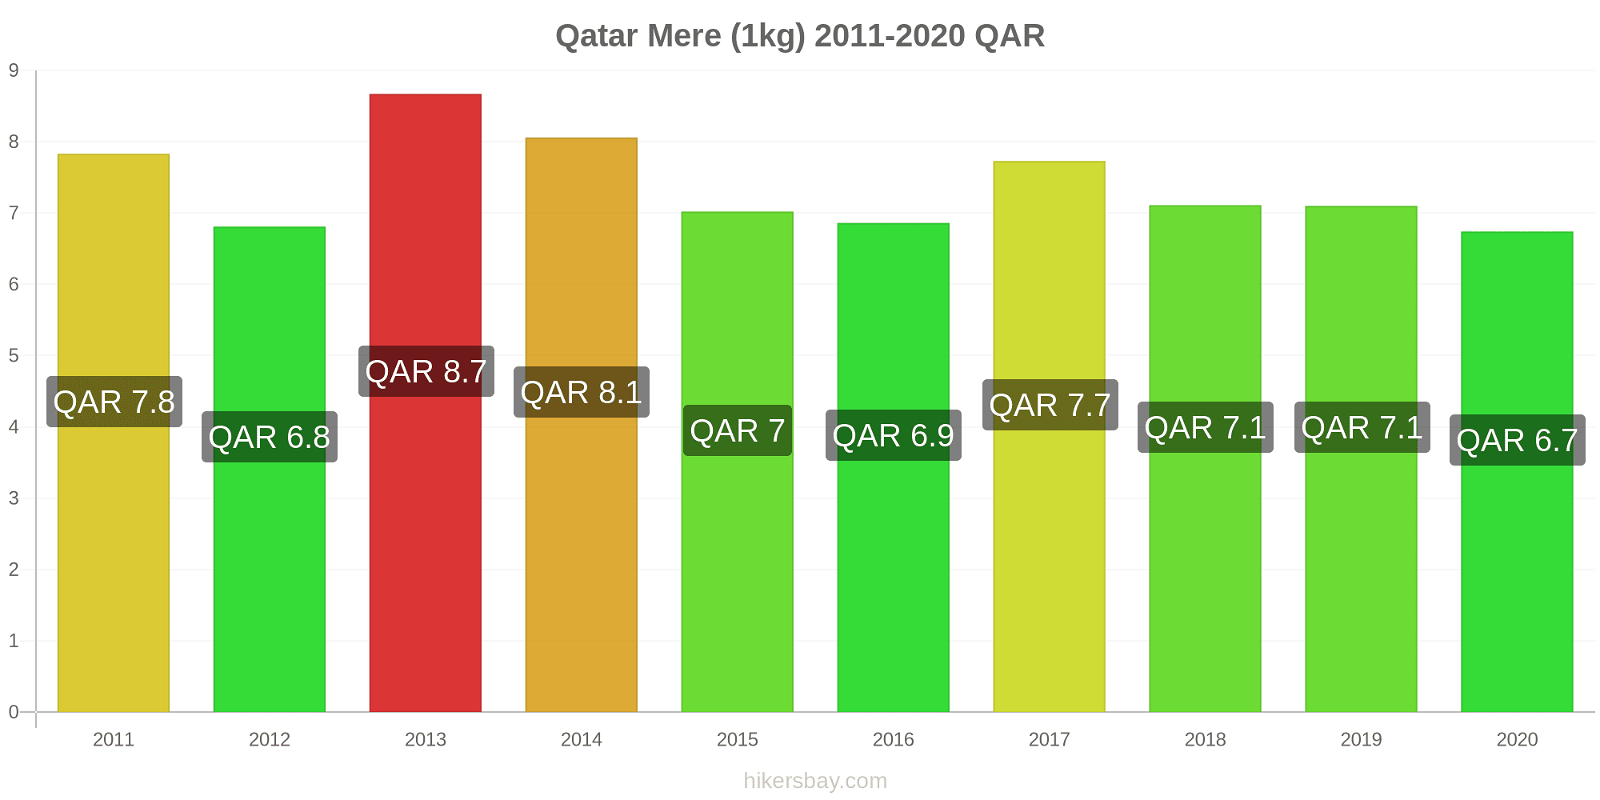 Qatar modificări de preț Mere (1kg) hikersbay.com